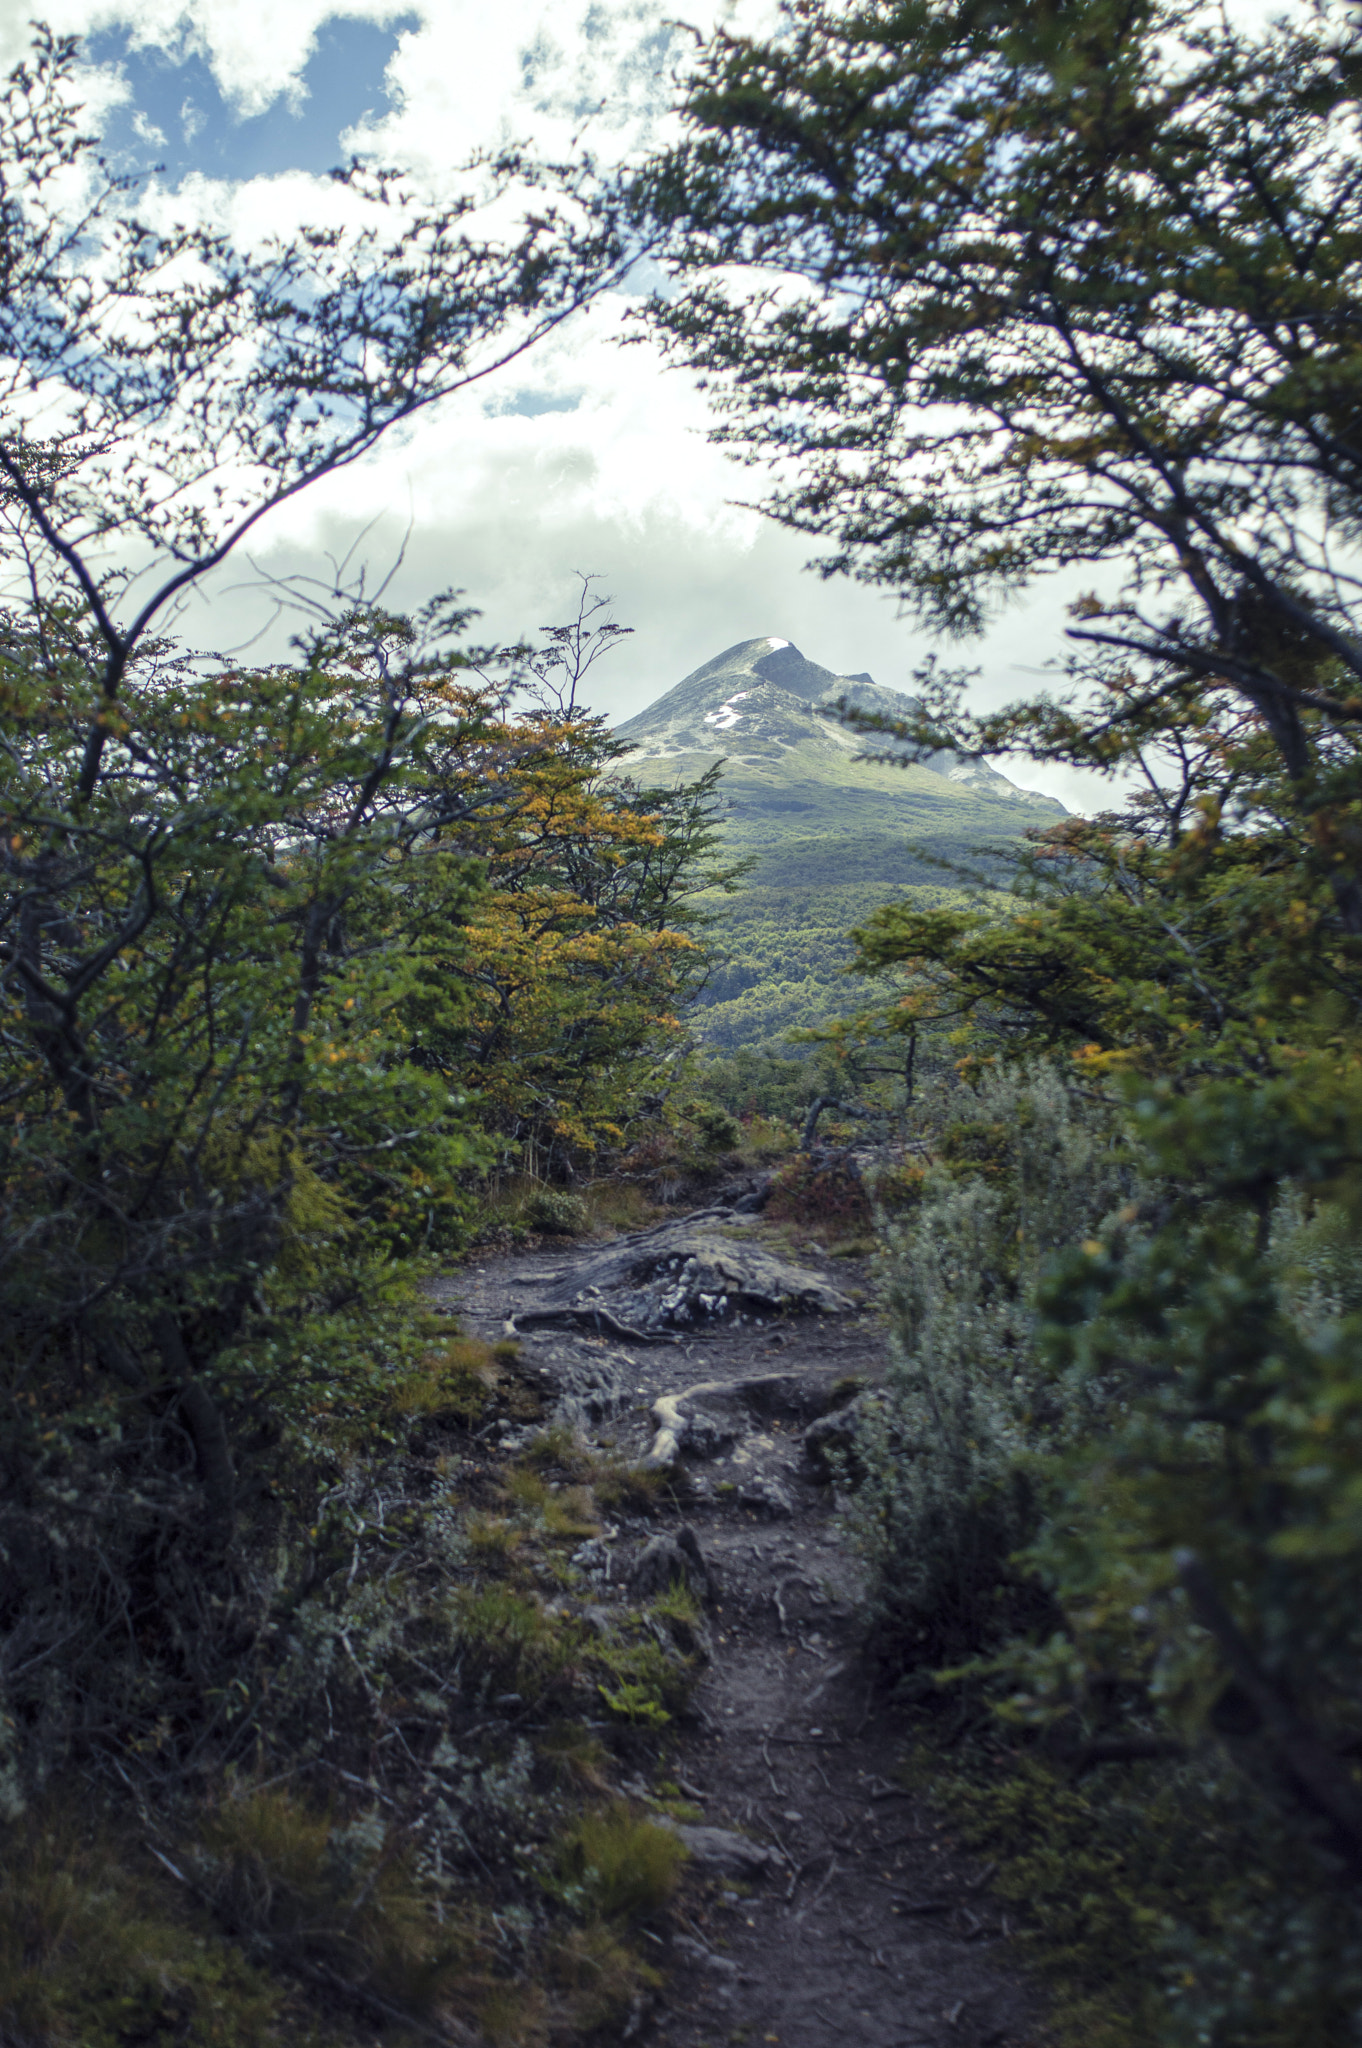 AF Nikkor 28mm f/2.8 sample photo. Ushuaia national park photography